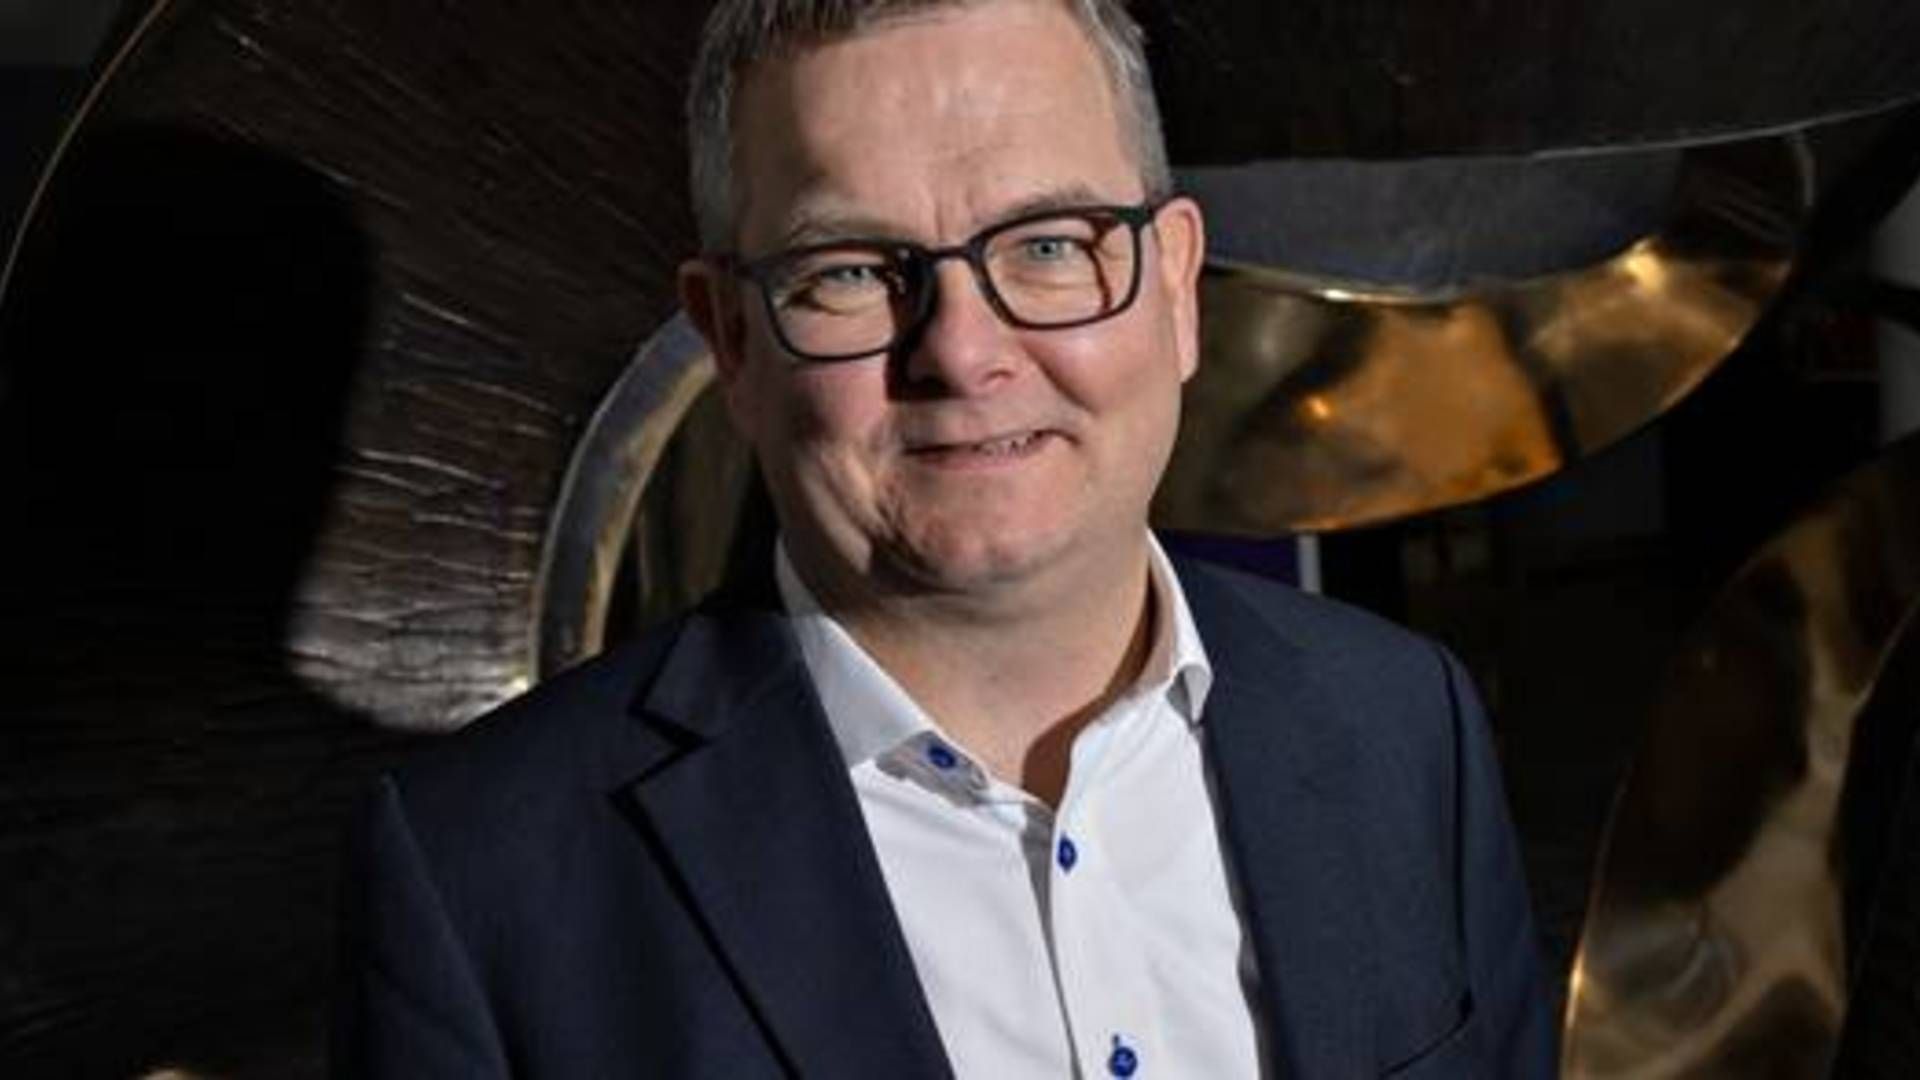 Lars Nørgaard er adm. direktør i T&W Medical, som er familierne Tøpholm og Westermanns holdingselskab. | Foto: Gregers Tycho